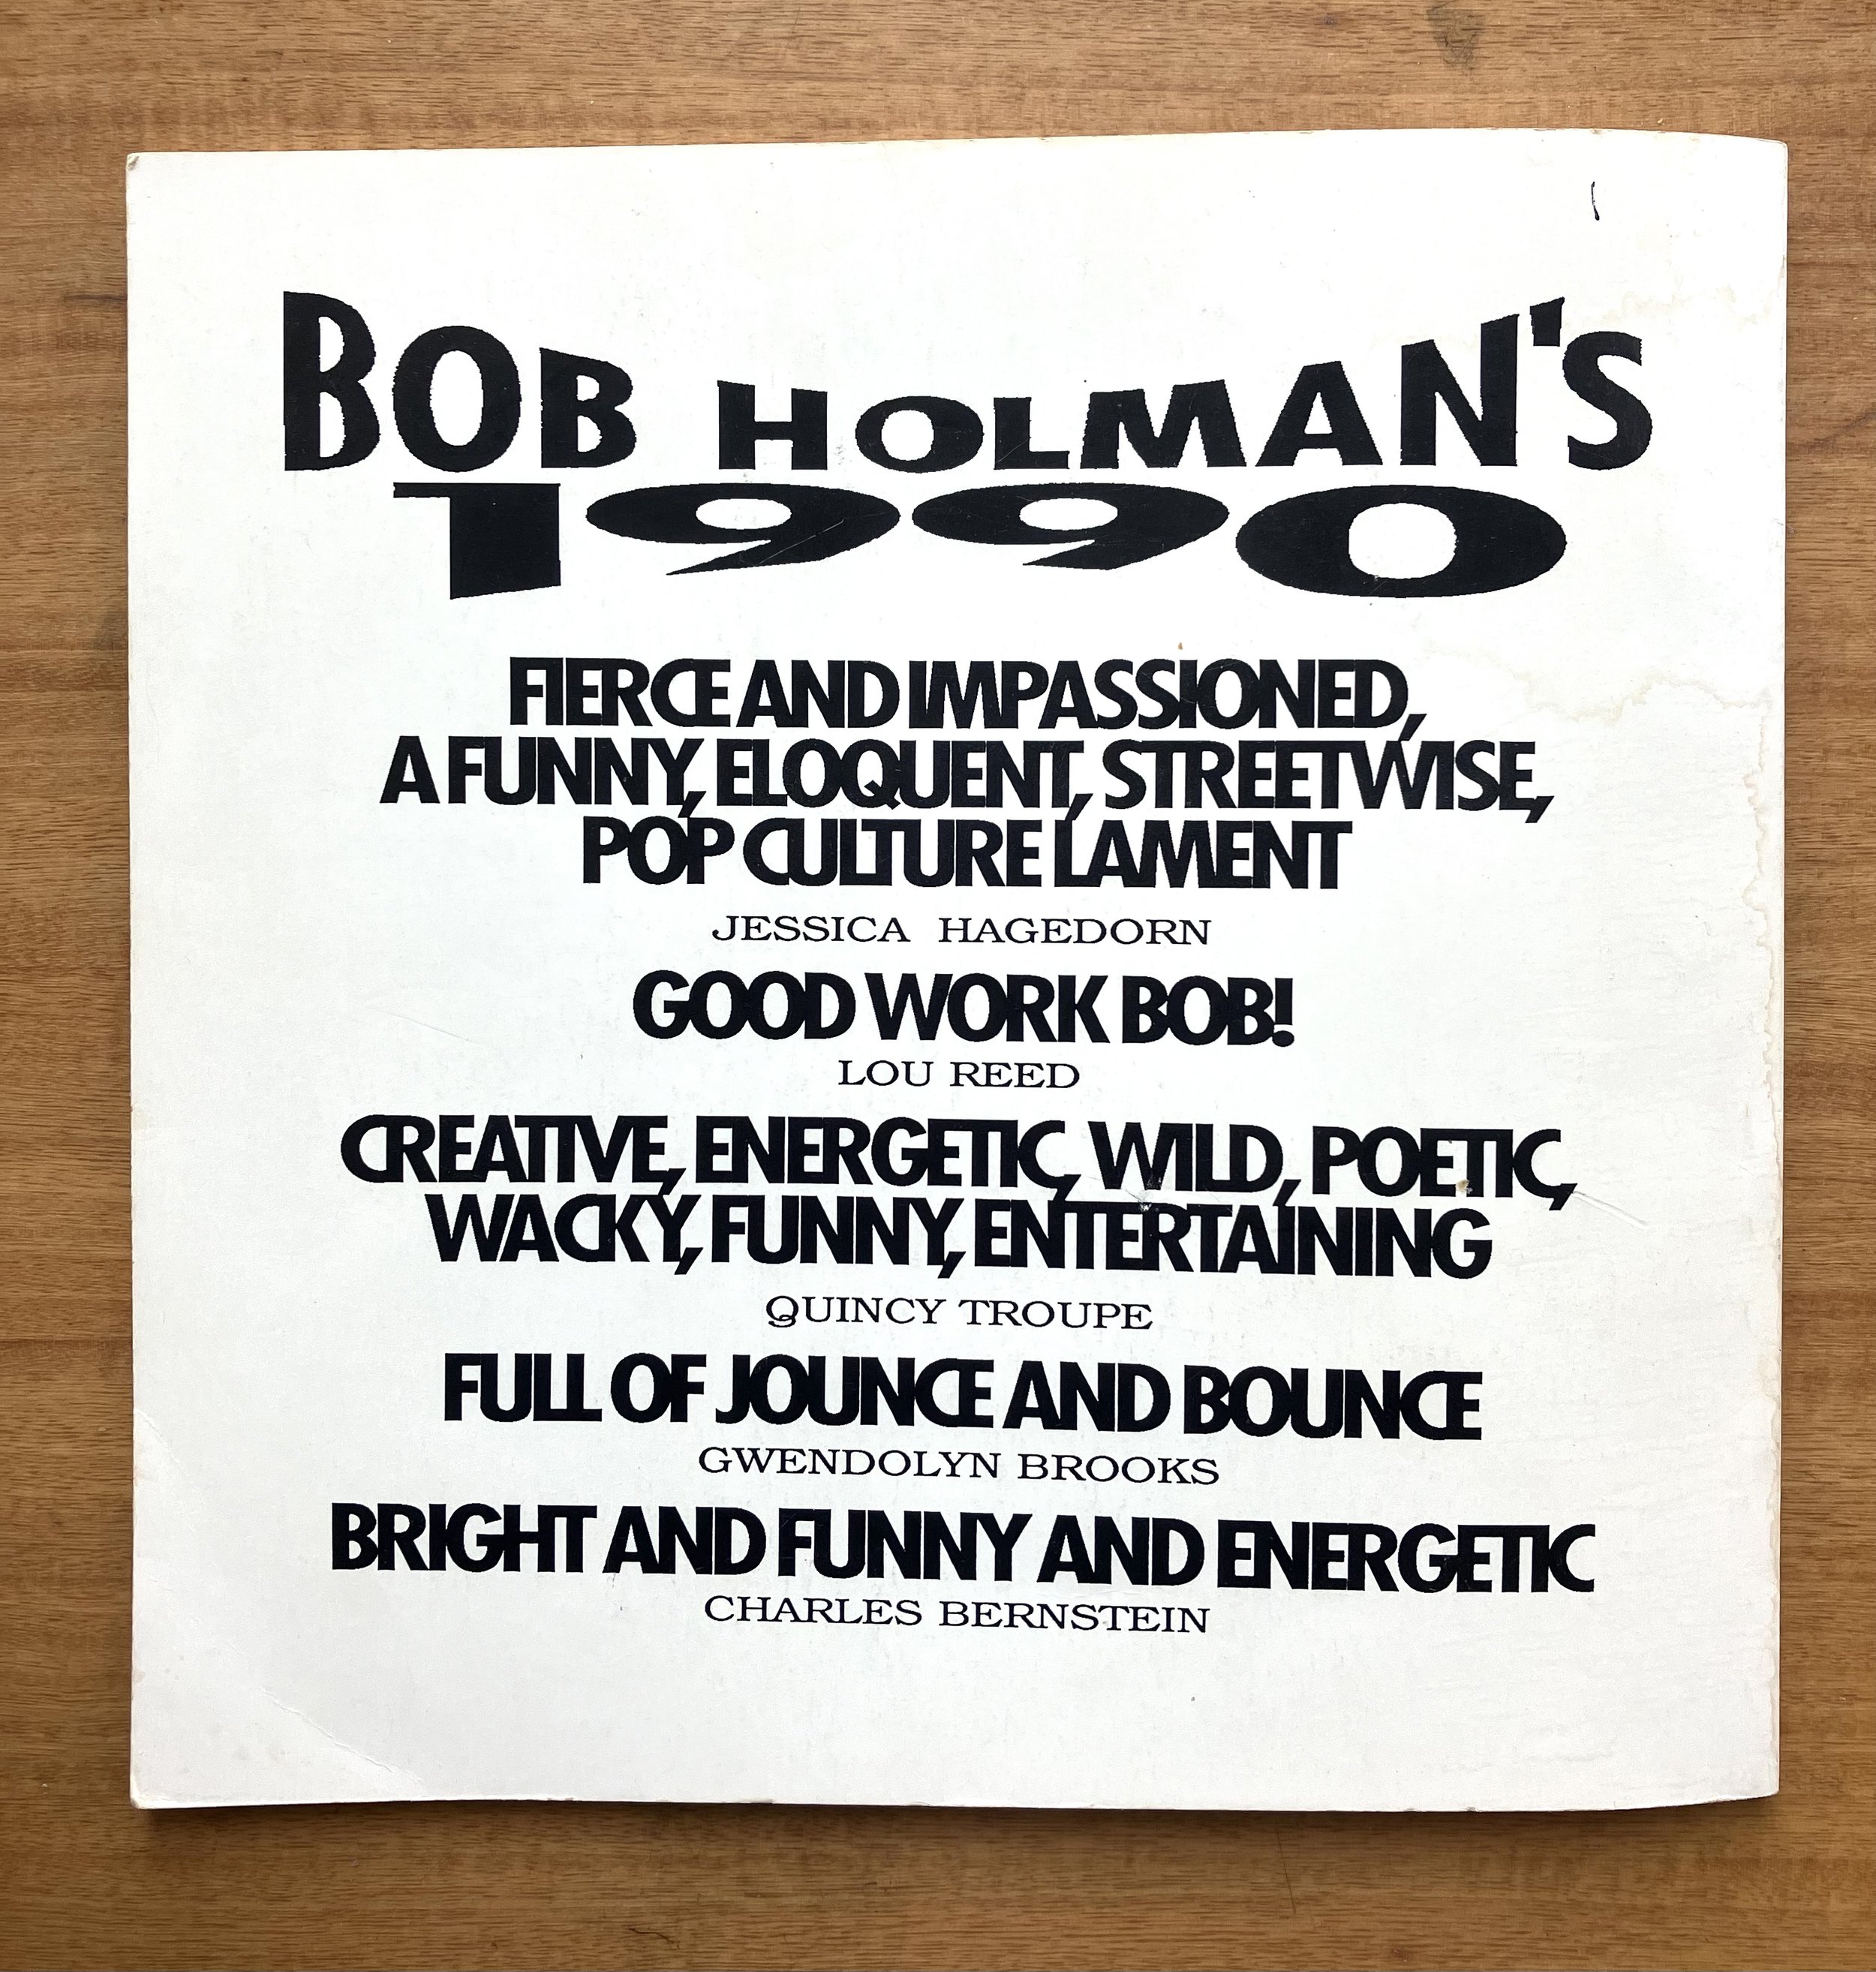 BobHolmans1990_BackCover.jpg